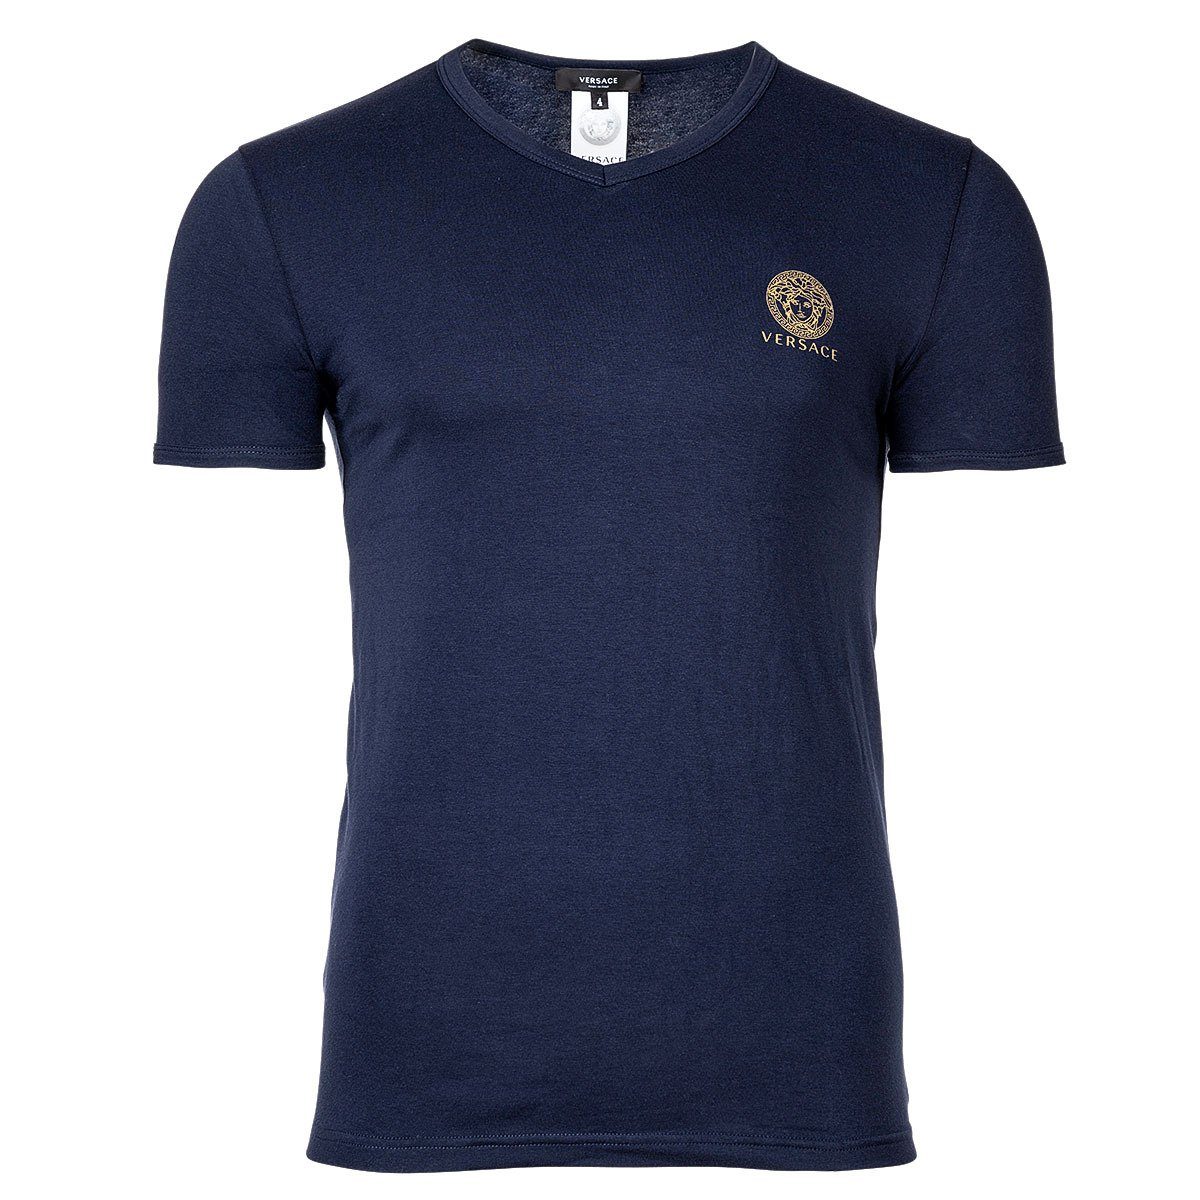 Versace T-Shirt Herren T-Shirt - Unterhemd, V-Ausschnitt, Stretch Blau